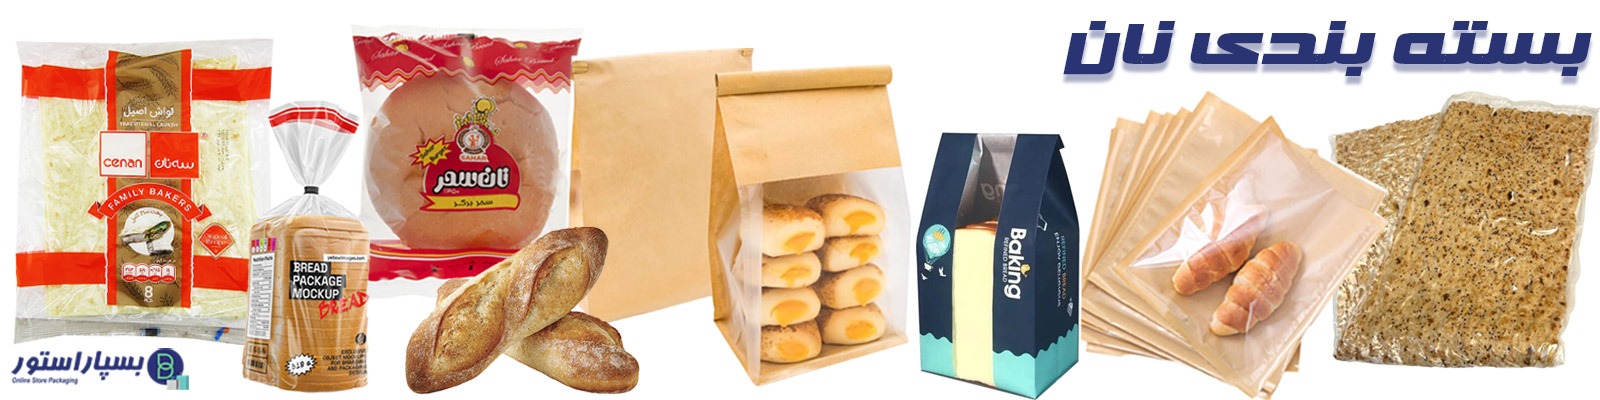 بسته بندی نان لواش | بسته بندی نان در منزل | پاکت بسته بندی نان | انواع بسته بندی نان | انواع بسته بندی نان خشک | نایلون مخصوص بسته بندی نان | بسته بندی نان سنتی | طراحی بسته بندی نان | چاپ بسته بندی نان | بسته بندی نان تست | بسته بندی نان سنگک | بسته بندی نان تافتون | بسته بندی نان باگت | بسته بندی اختصاصی نان | صادارت لفاف بسته بندی نان | صادرات پاکت نان | کارخانه تولید بسته بندی نان